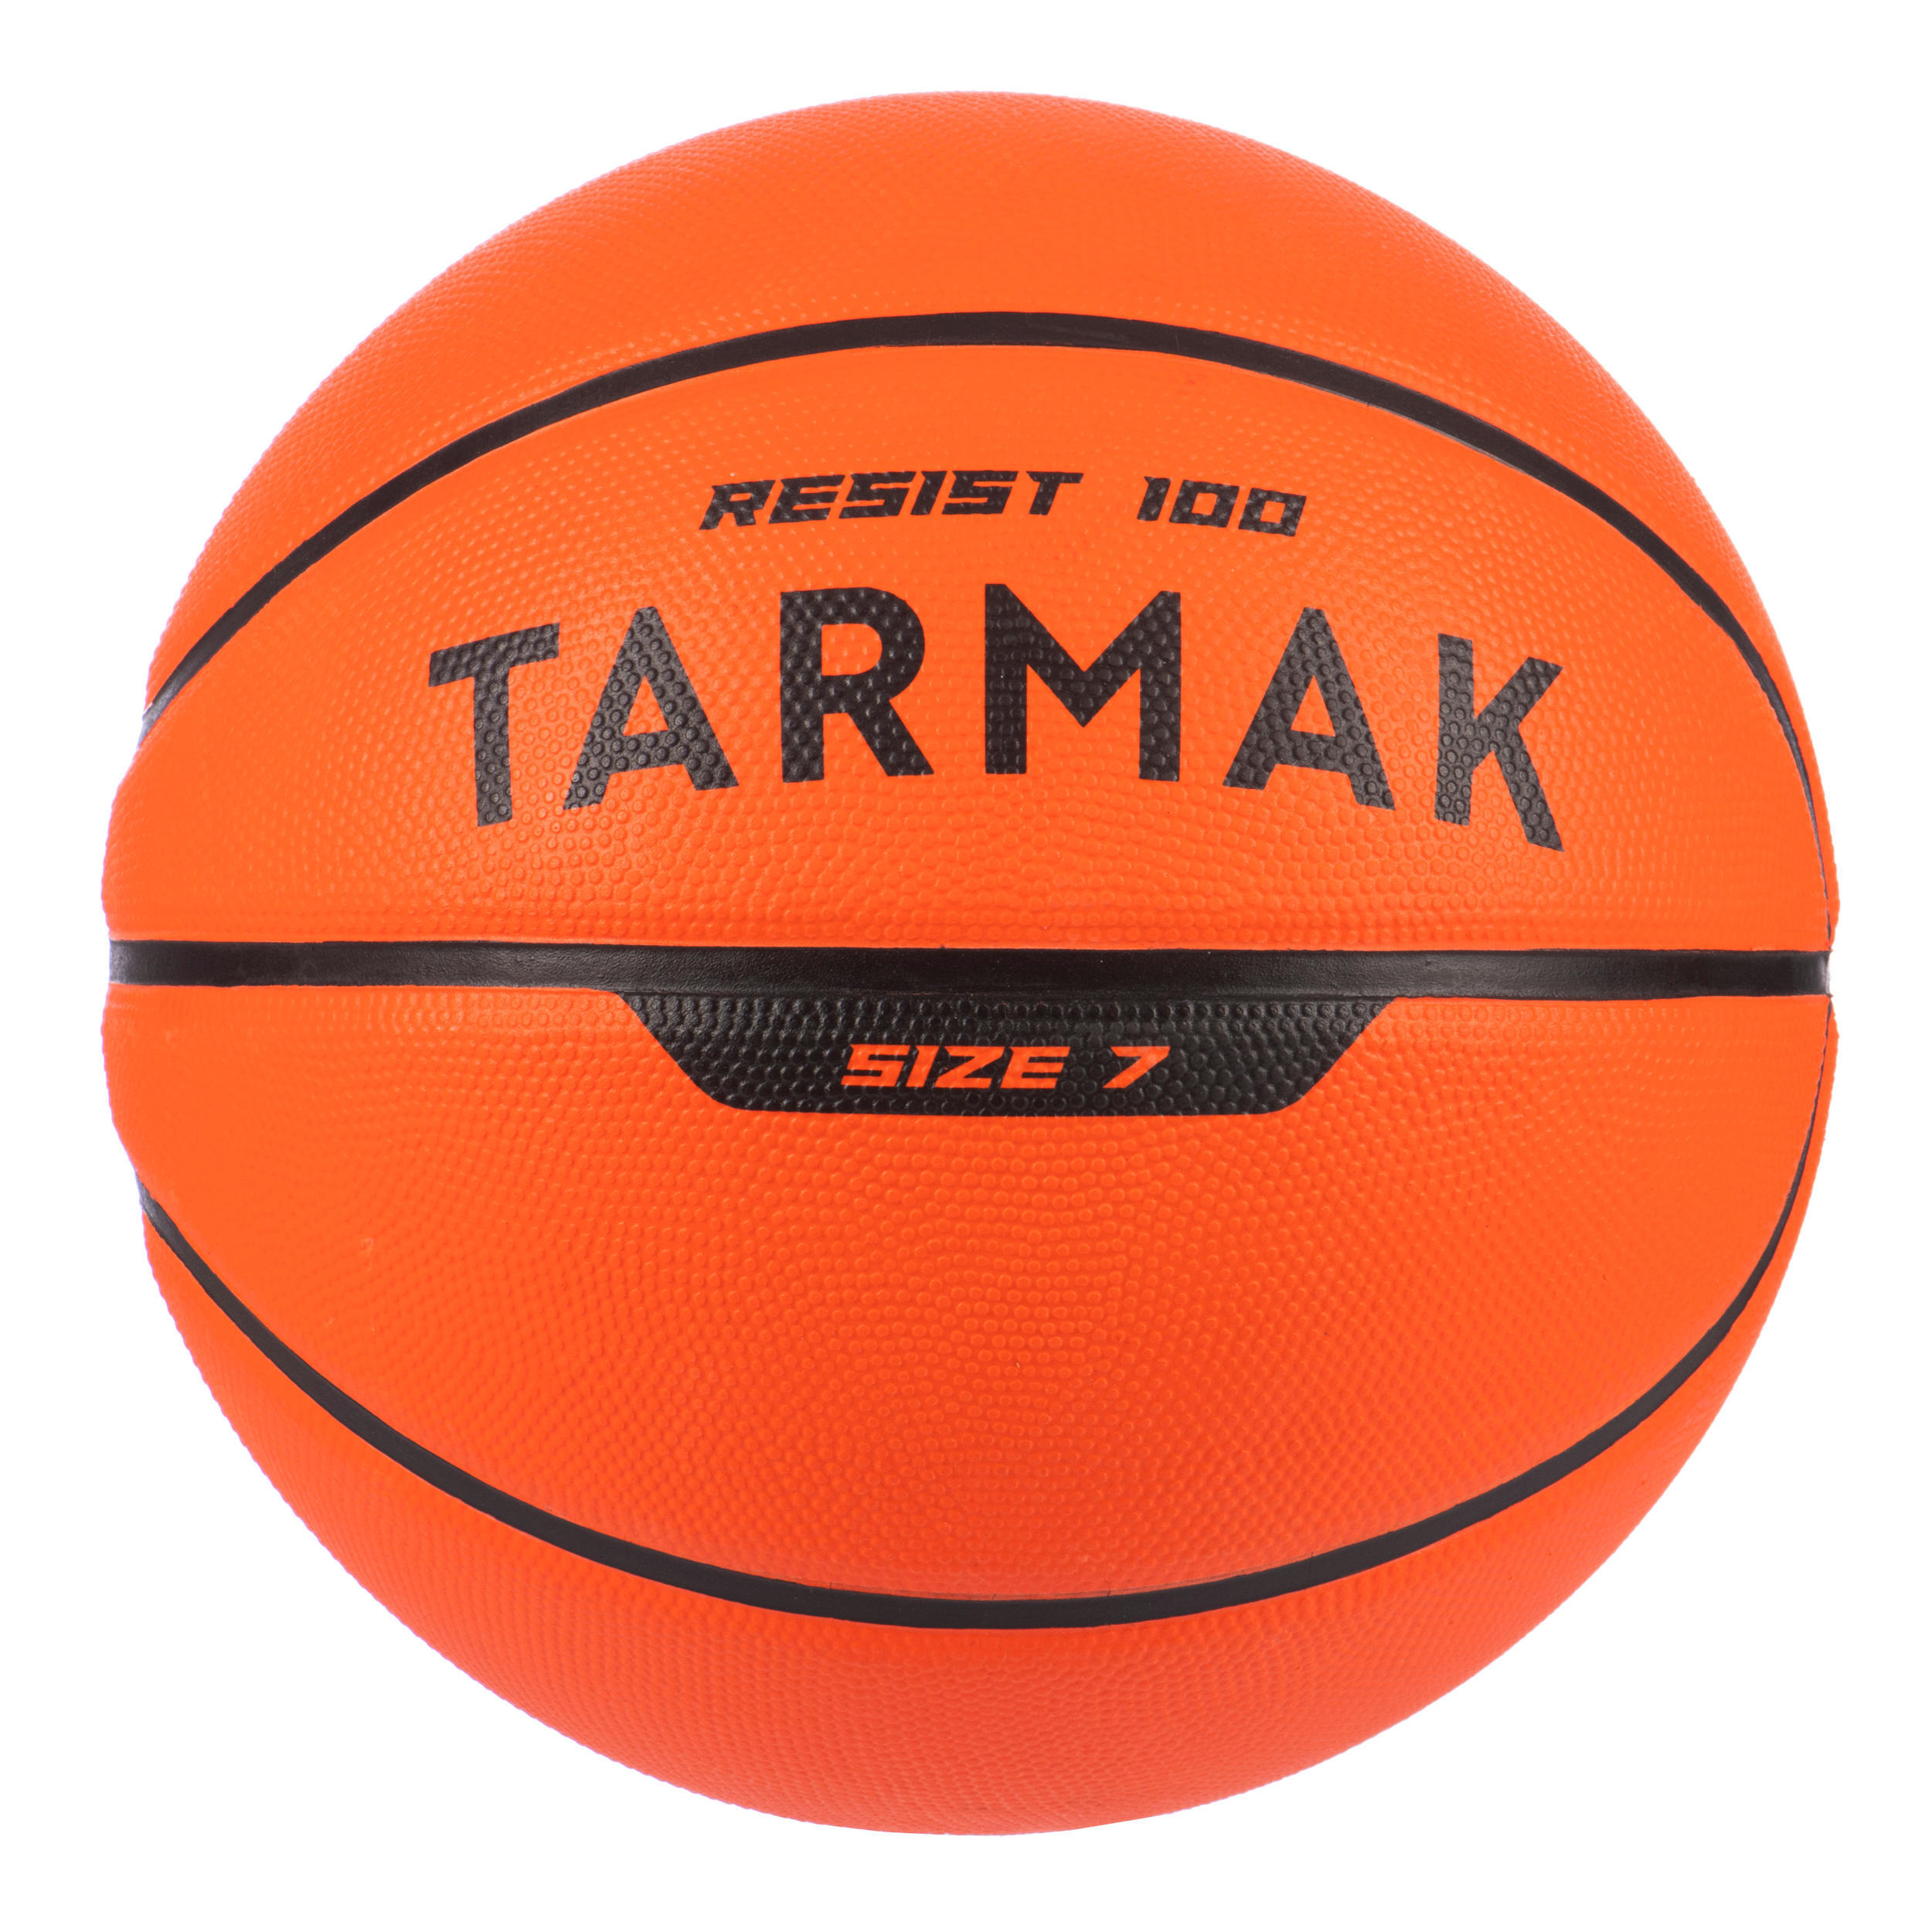 Мяч баскетбольный R100 размер 7 детский/взрослый оранжевый TARMAK, Королек мяч баскетбольный torres jam b02047 размер 7